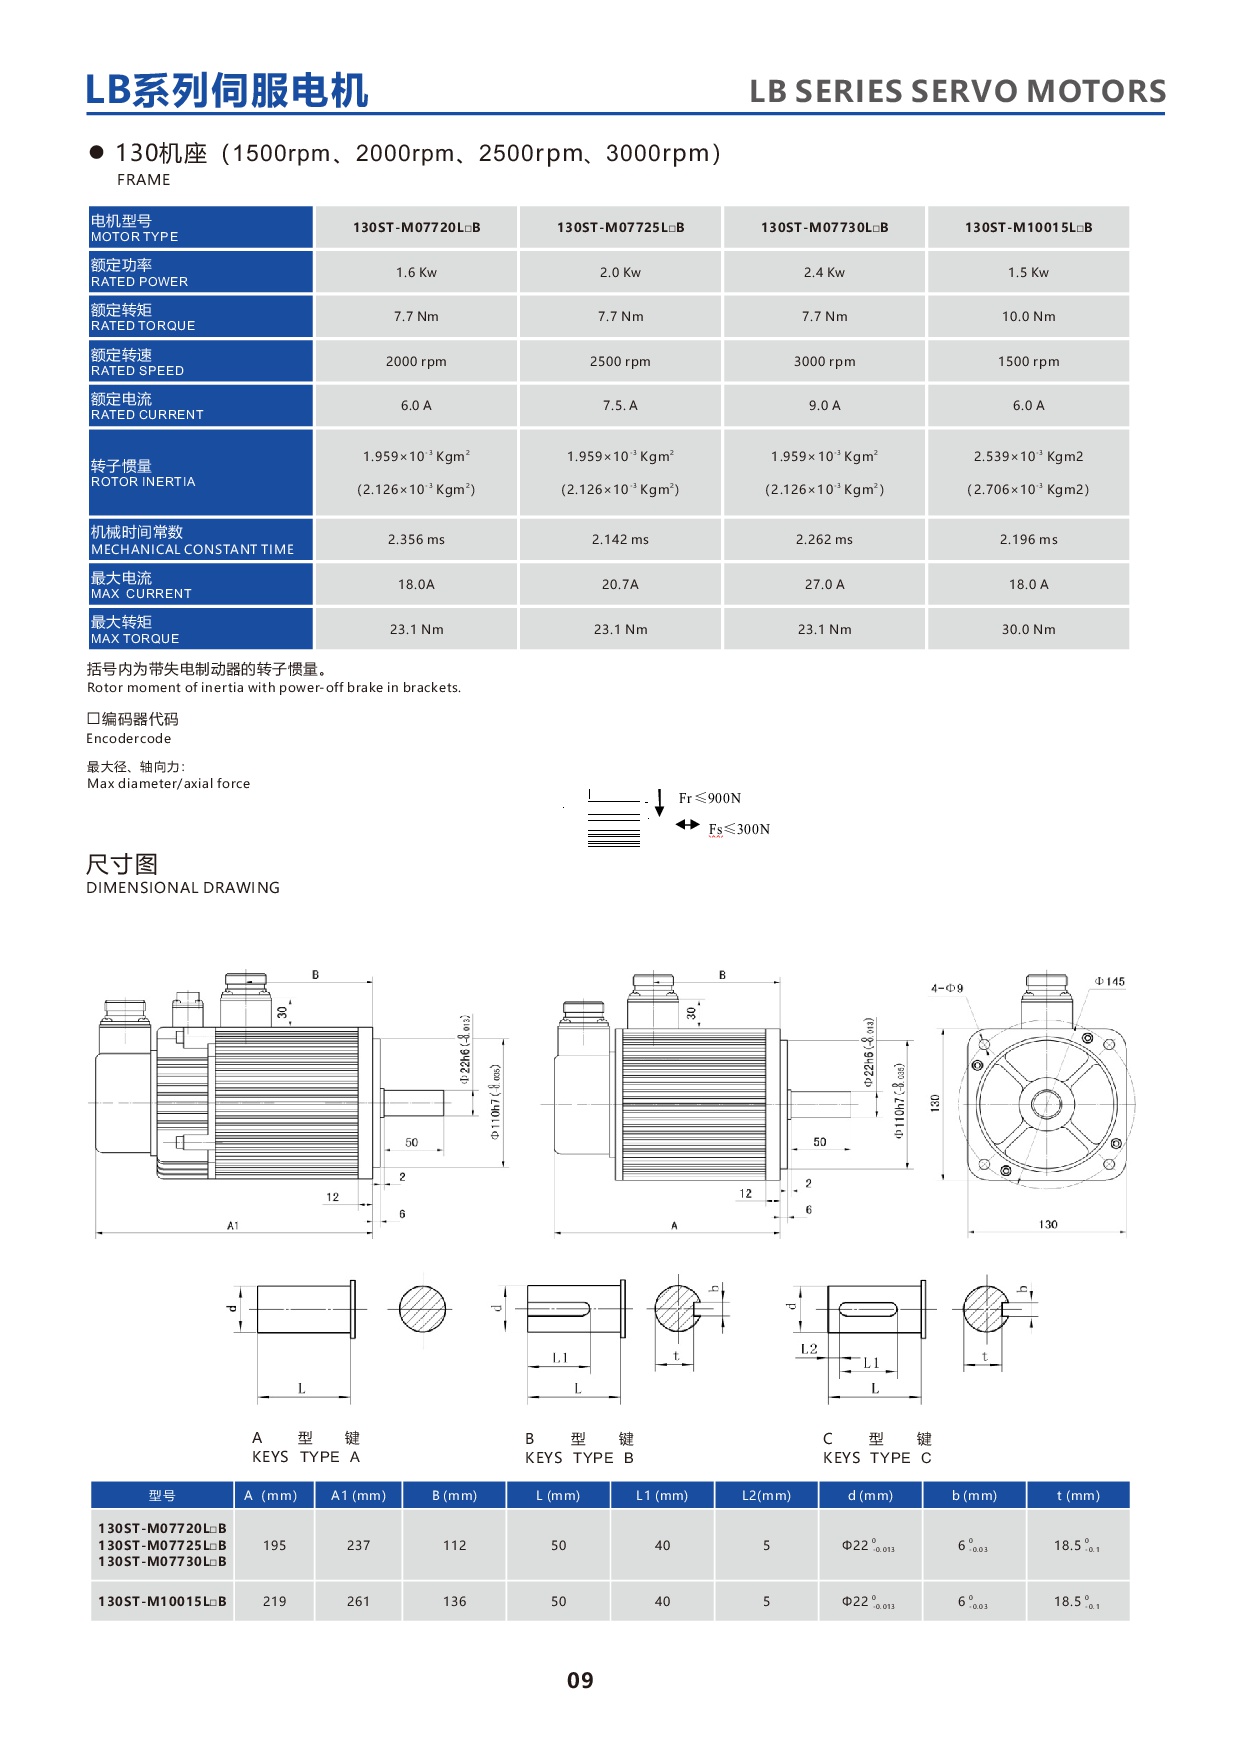 产品特性-7-LBseries130STservomotor